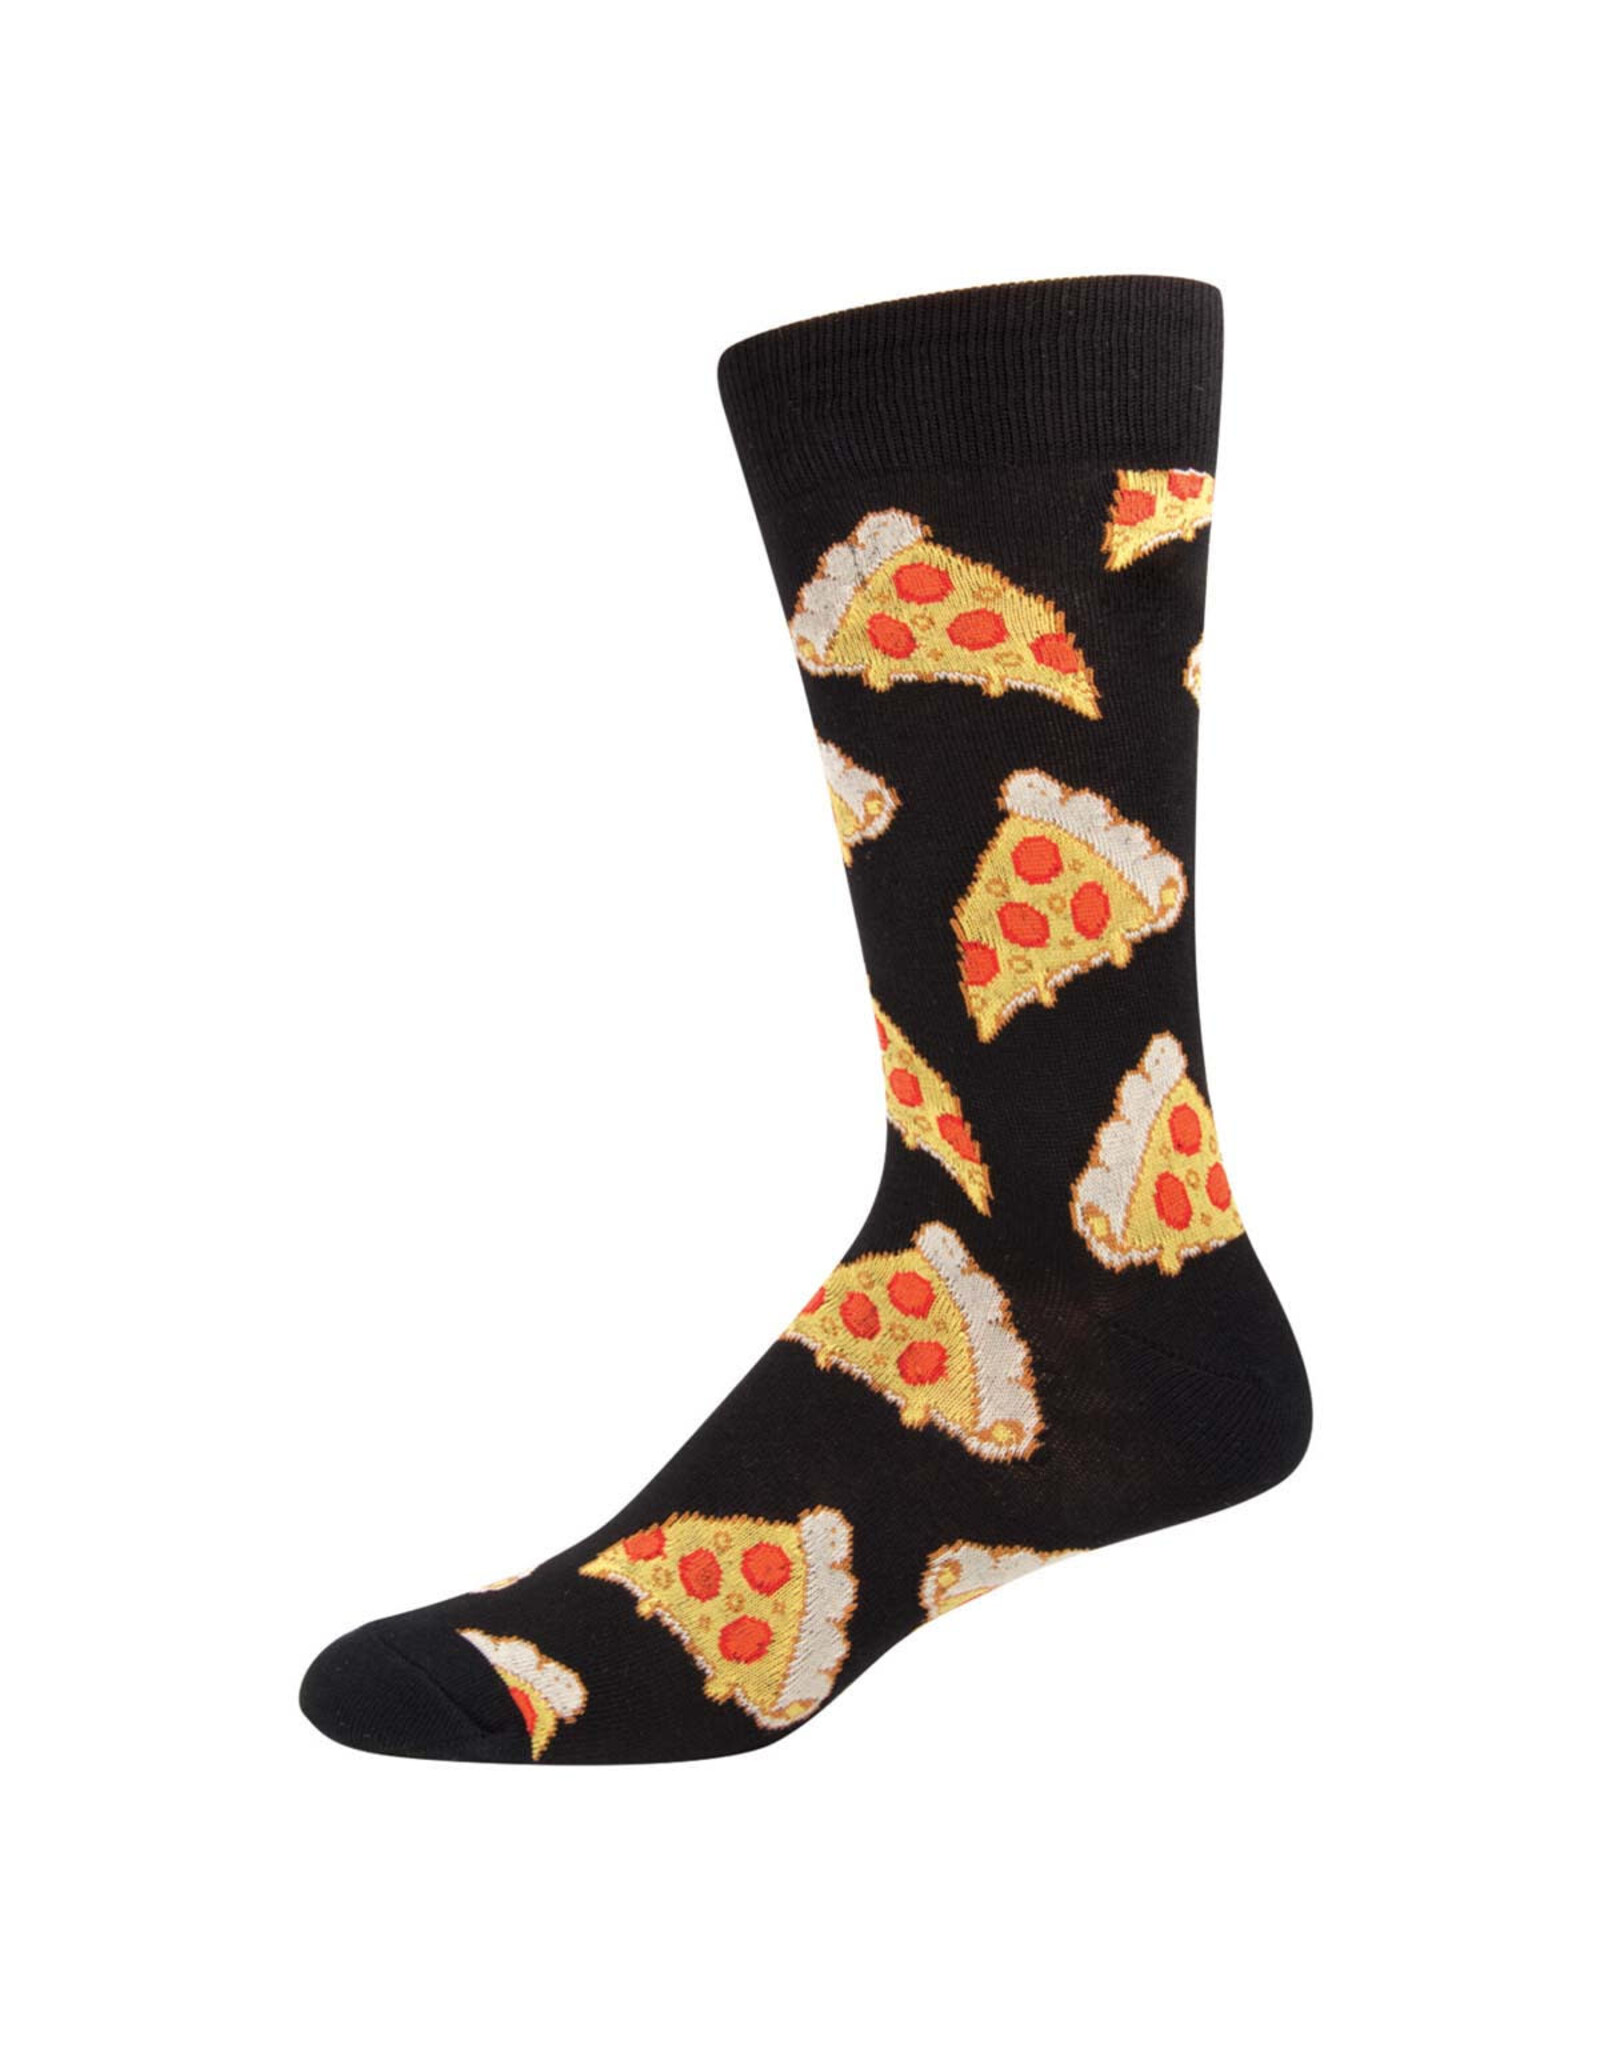 Socksmith Design Pizza 10-13 Men's Black Crew Socks